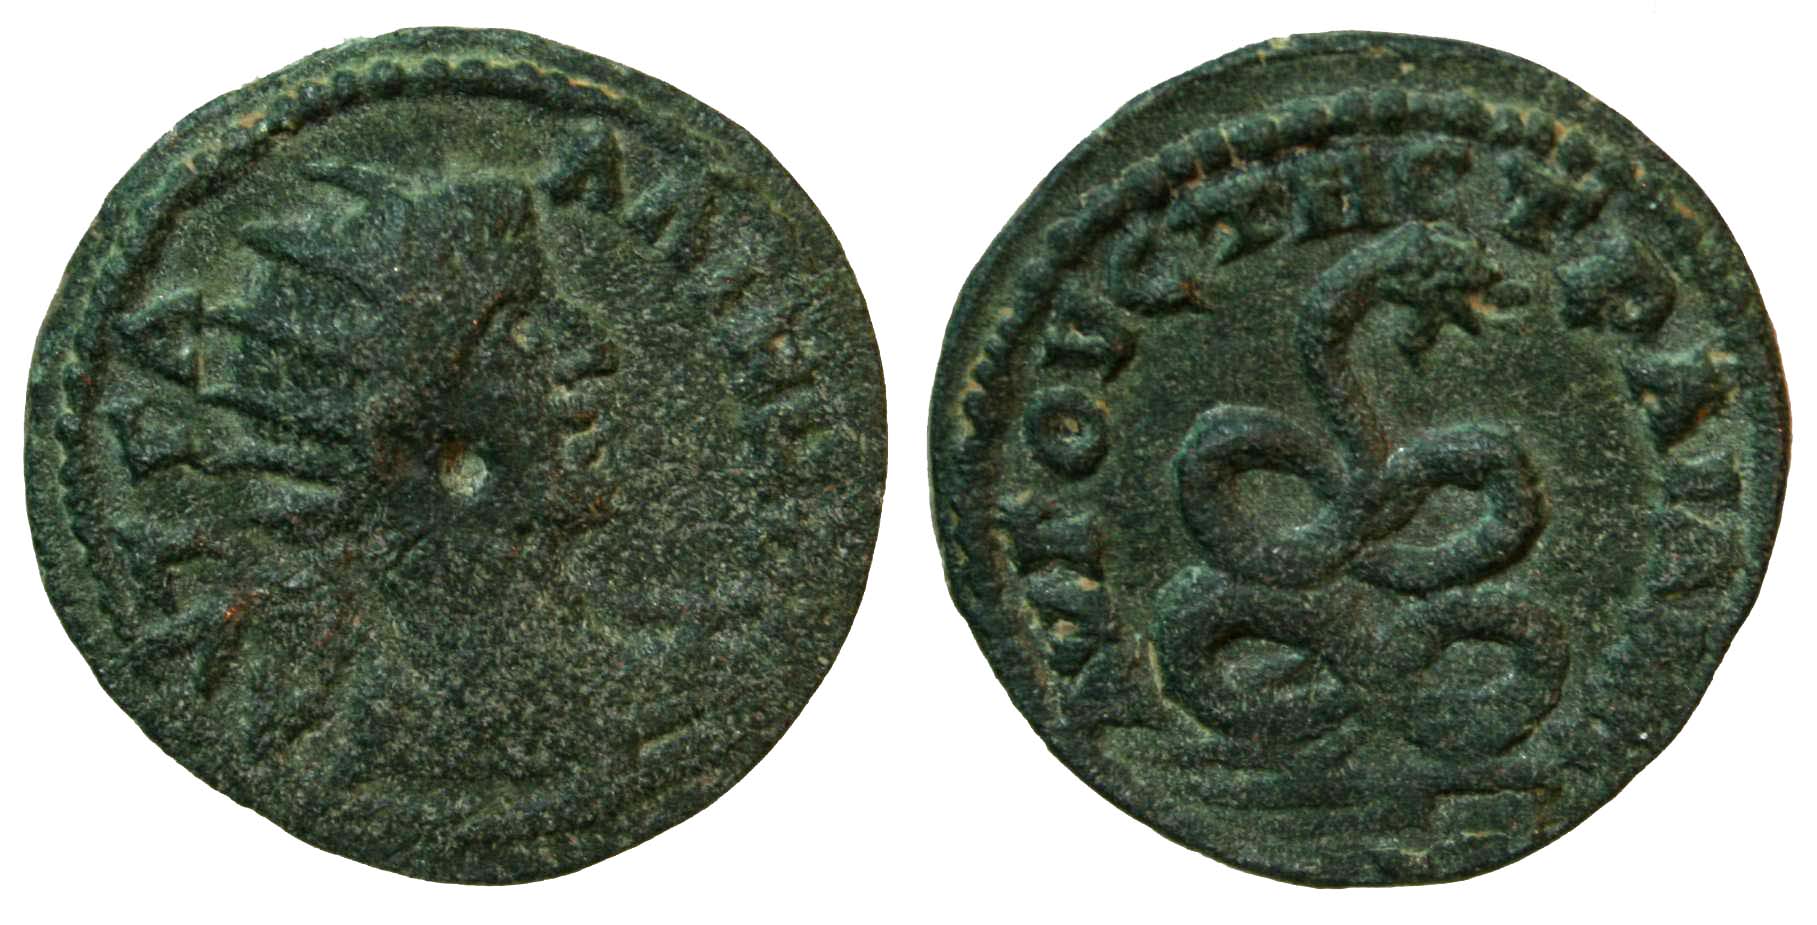 4729 Augusta Traiana Thracia Gallienus AE